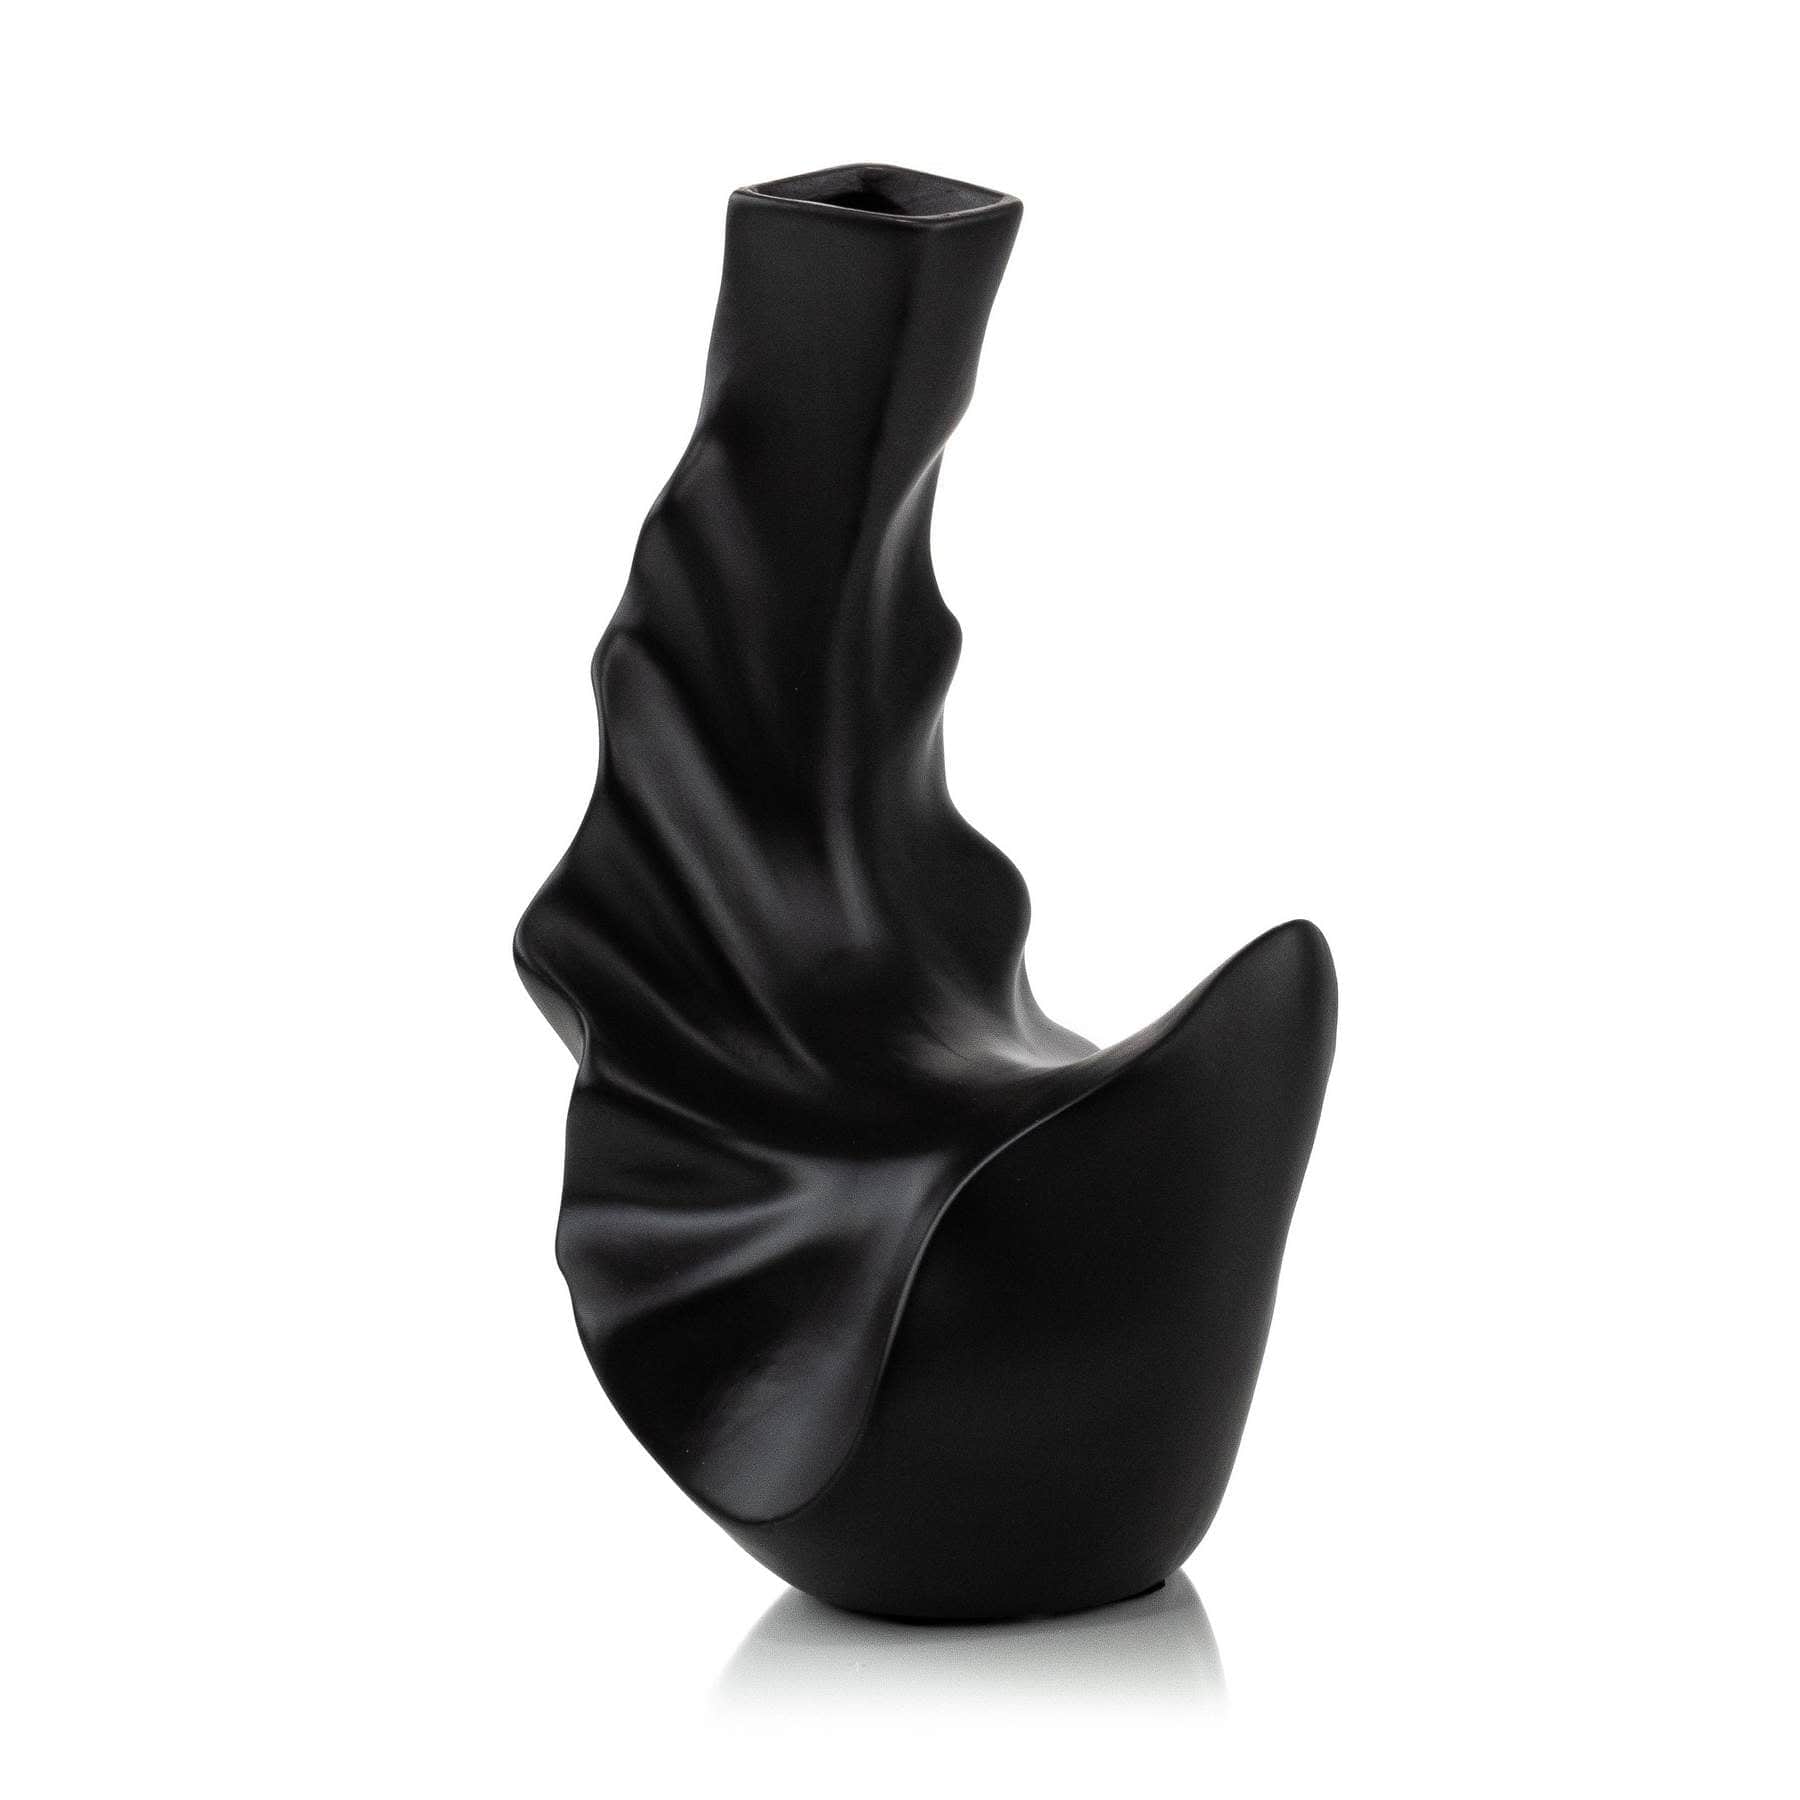 Curved Charcoal Matte Black Vase Elevate Home Decor - Vases